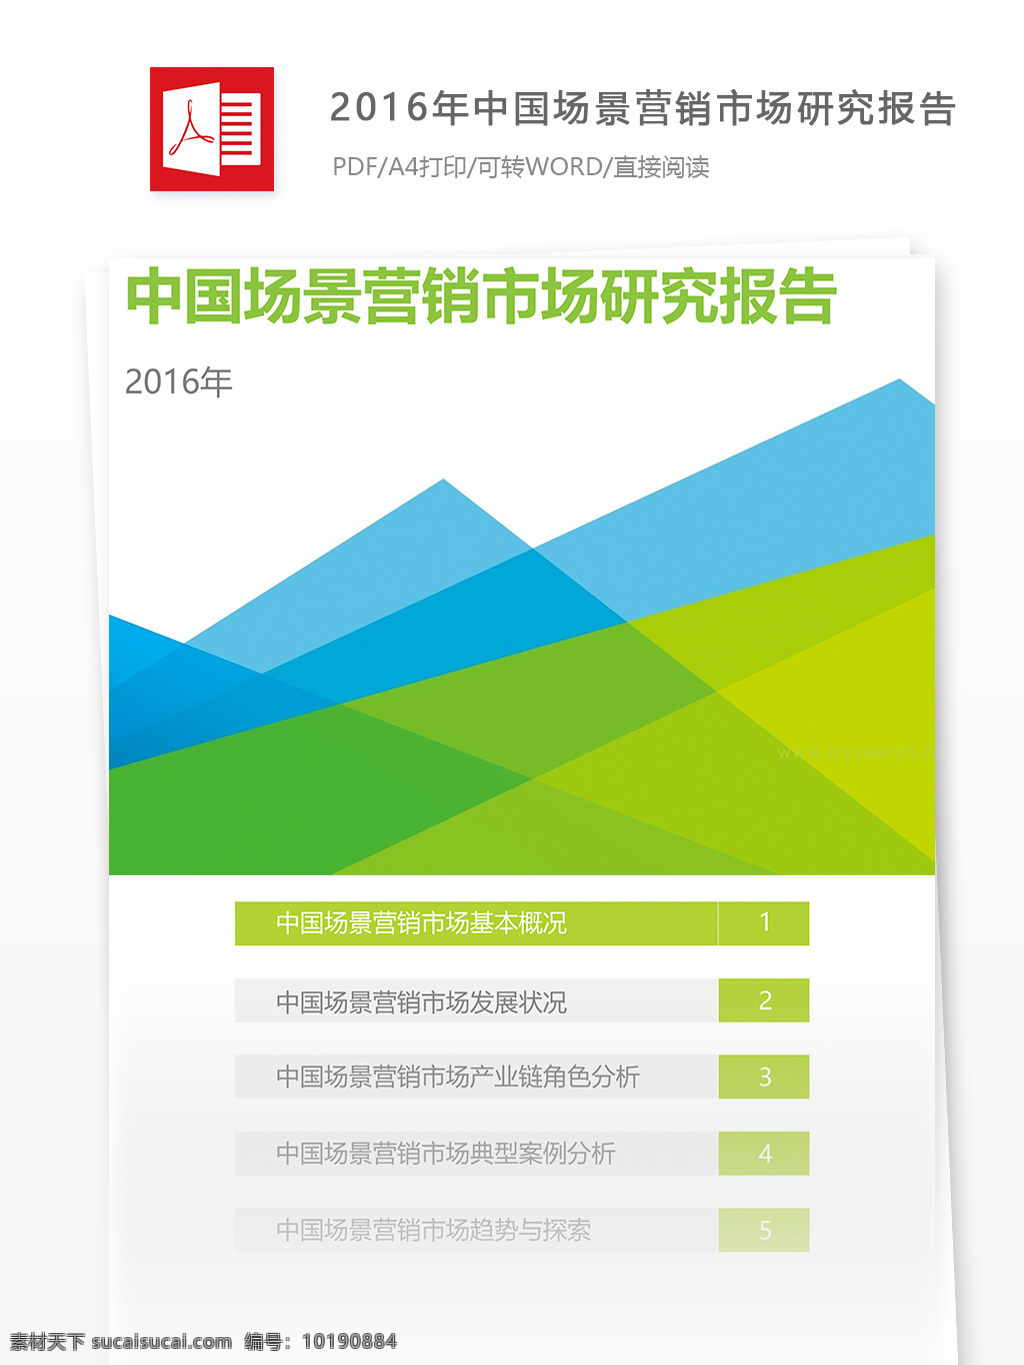 中国 场景 营销 市场 研究报告 pdf 行业分析 行业分析报告 报告模板 电商行业 电商报告 营销市场 市场分析